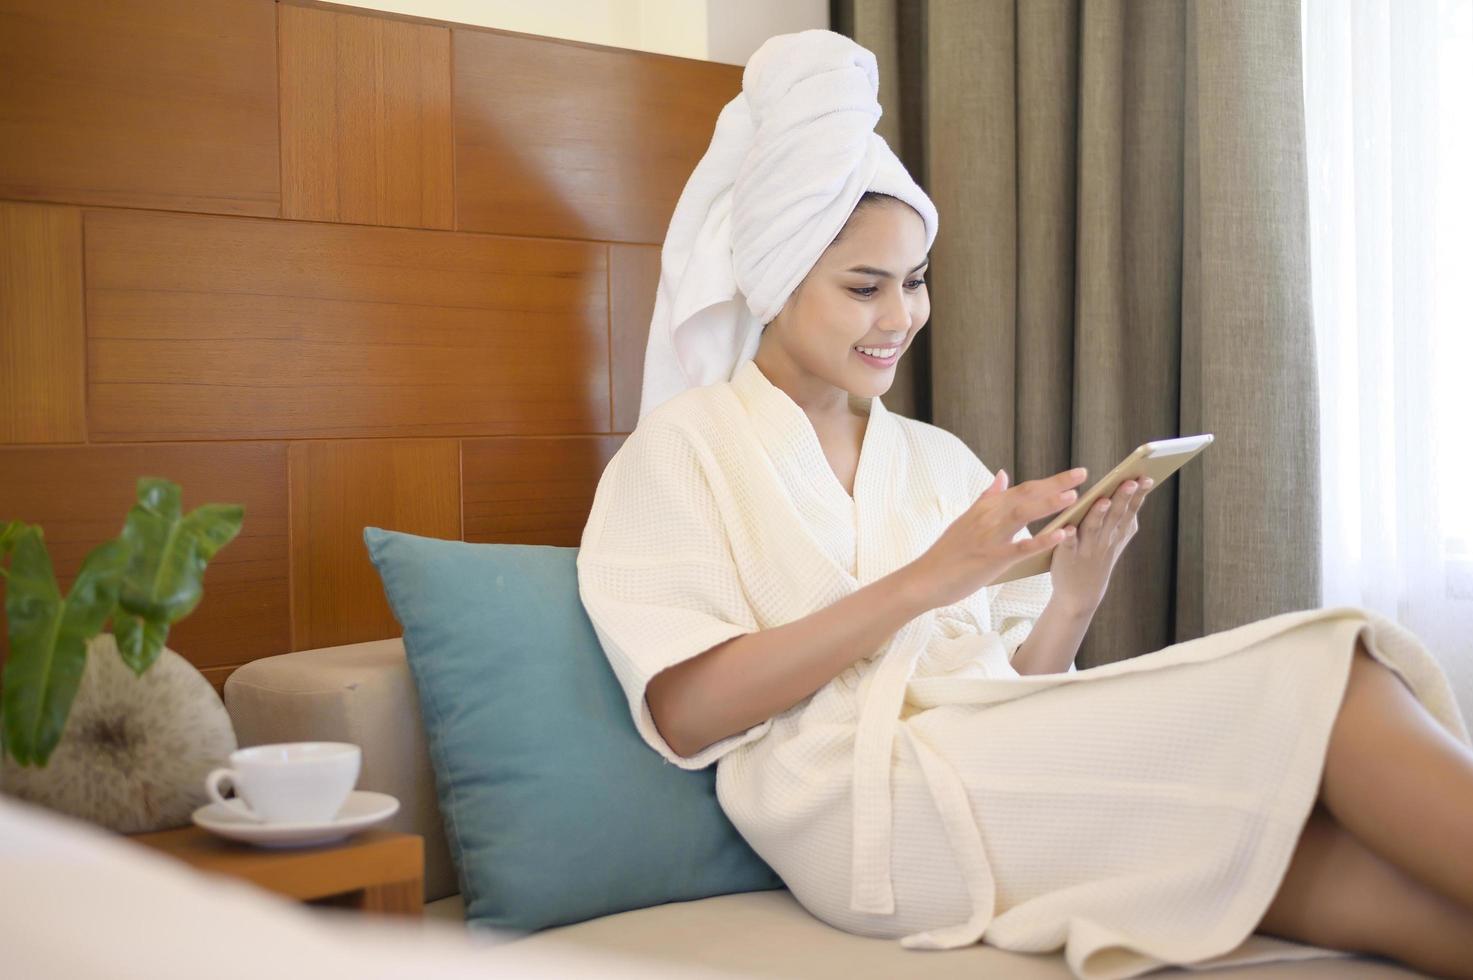 eine entspannte Frau mit weißem Bademantel und Handtuch, die morgens einen Kaffee trinkt, während sie ein Tablet benutzt foto